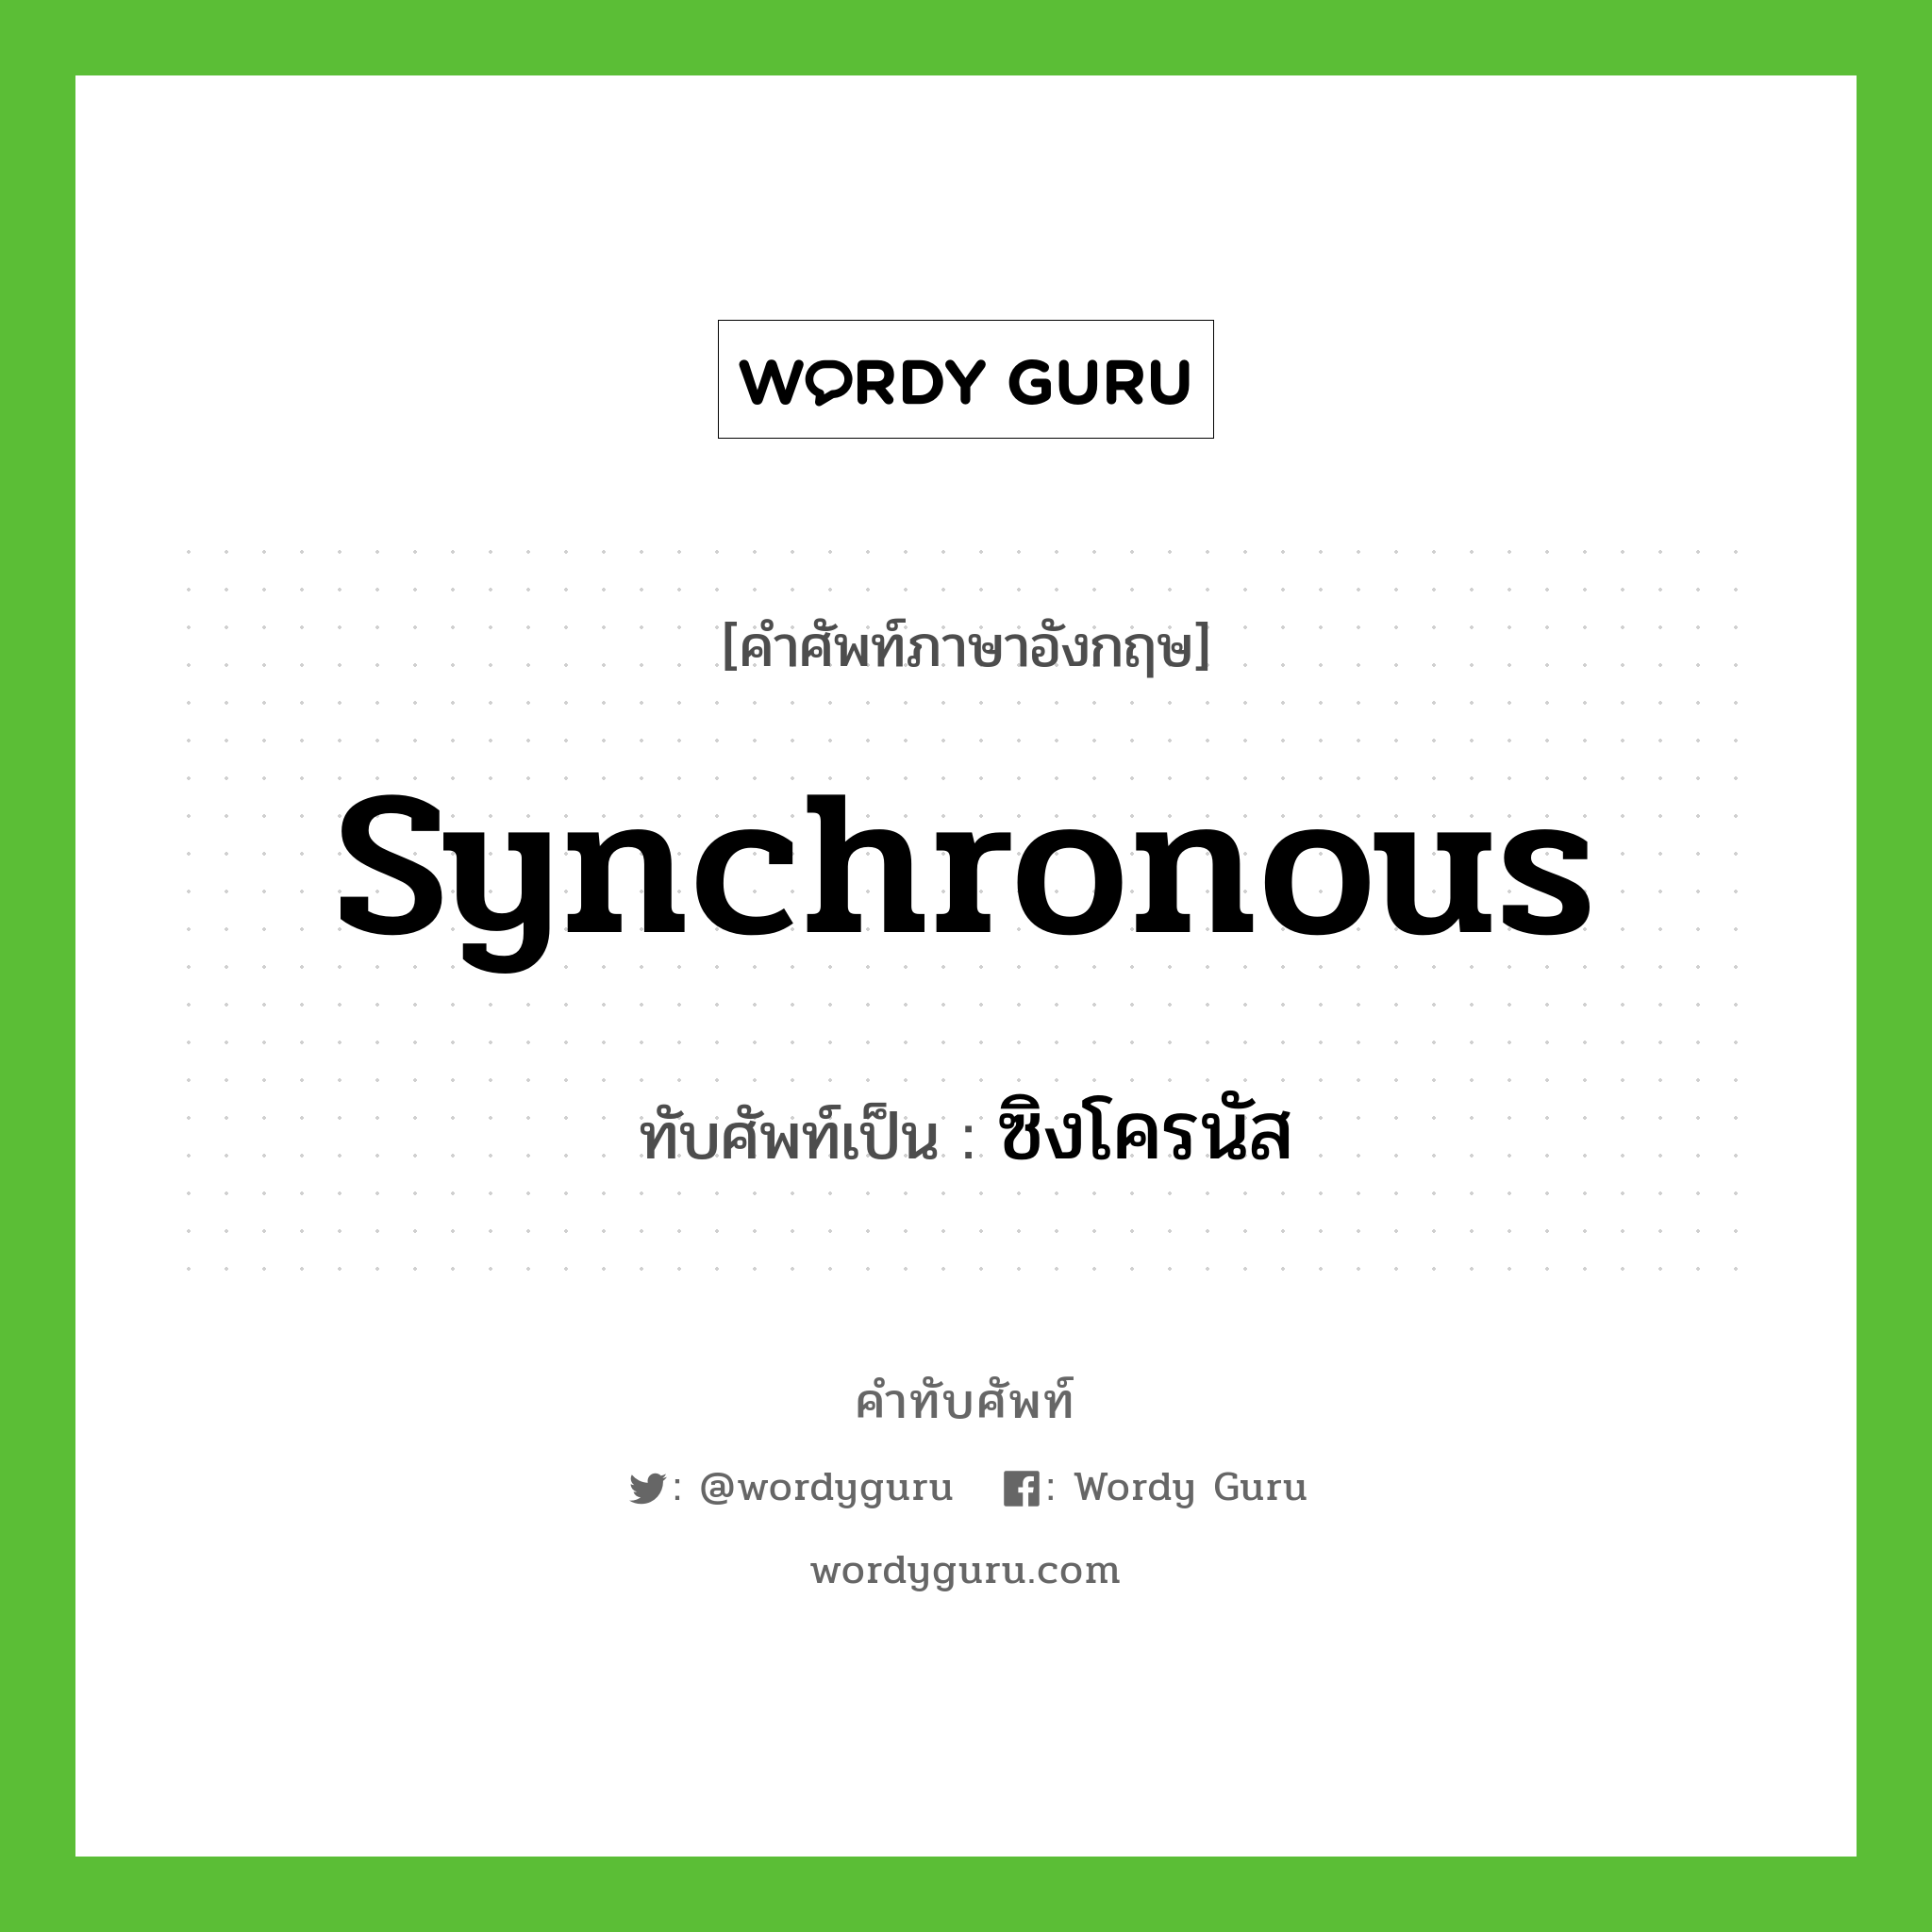 synchronous เขียนเป็นคำไทยว่าอะไร?, คำศัพท์ภาษาอังกฤษ synchronous ทับศัพท์เป็น ซิงโครนัส